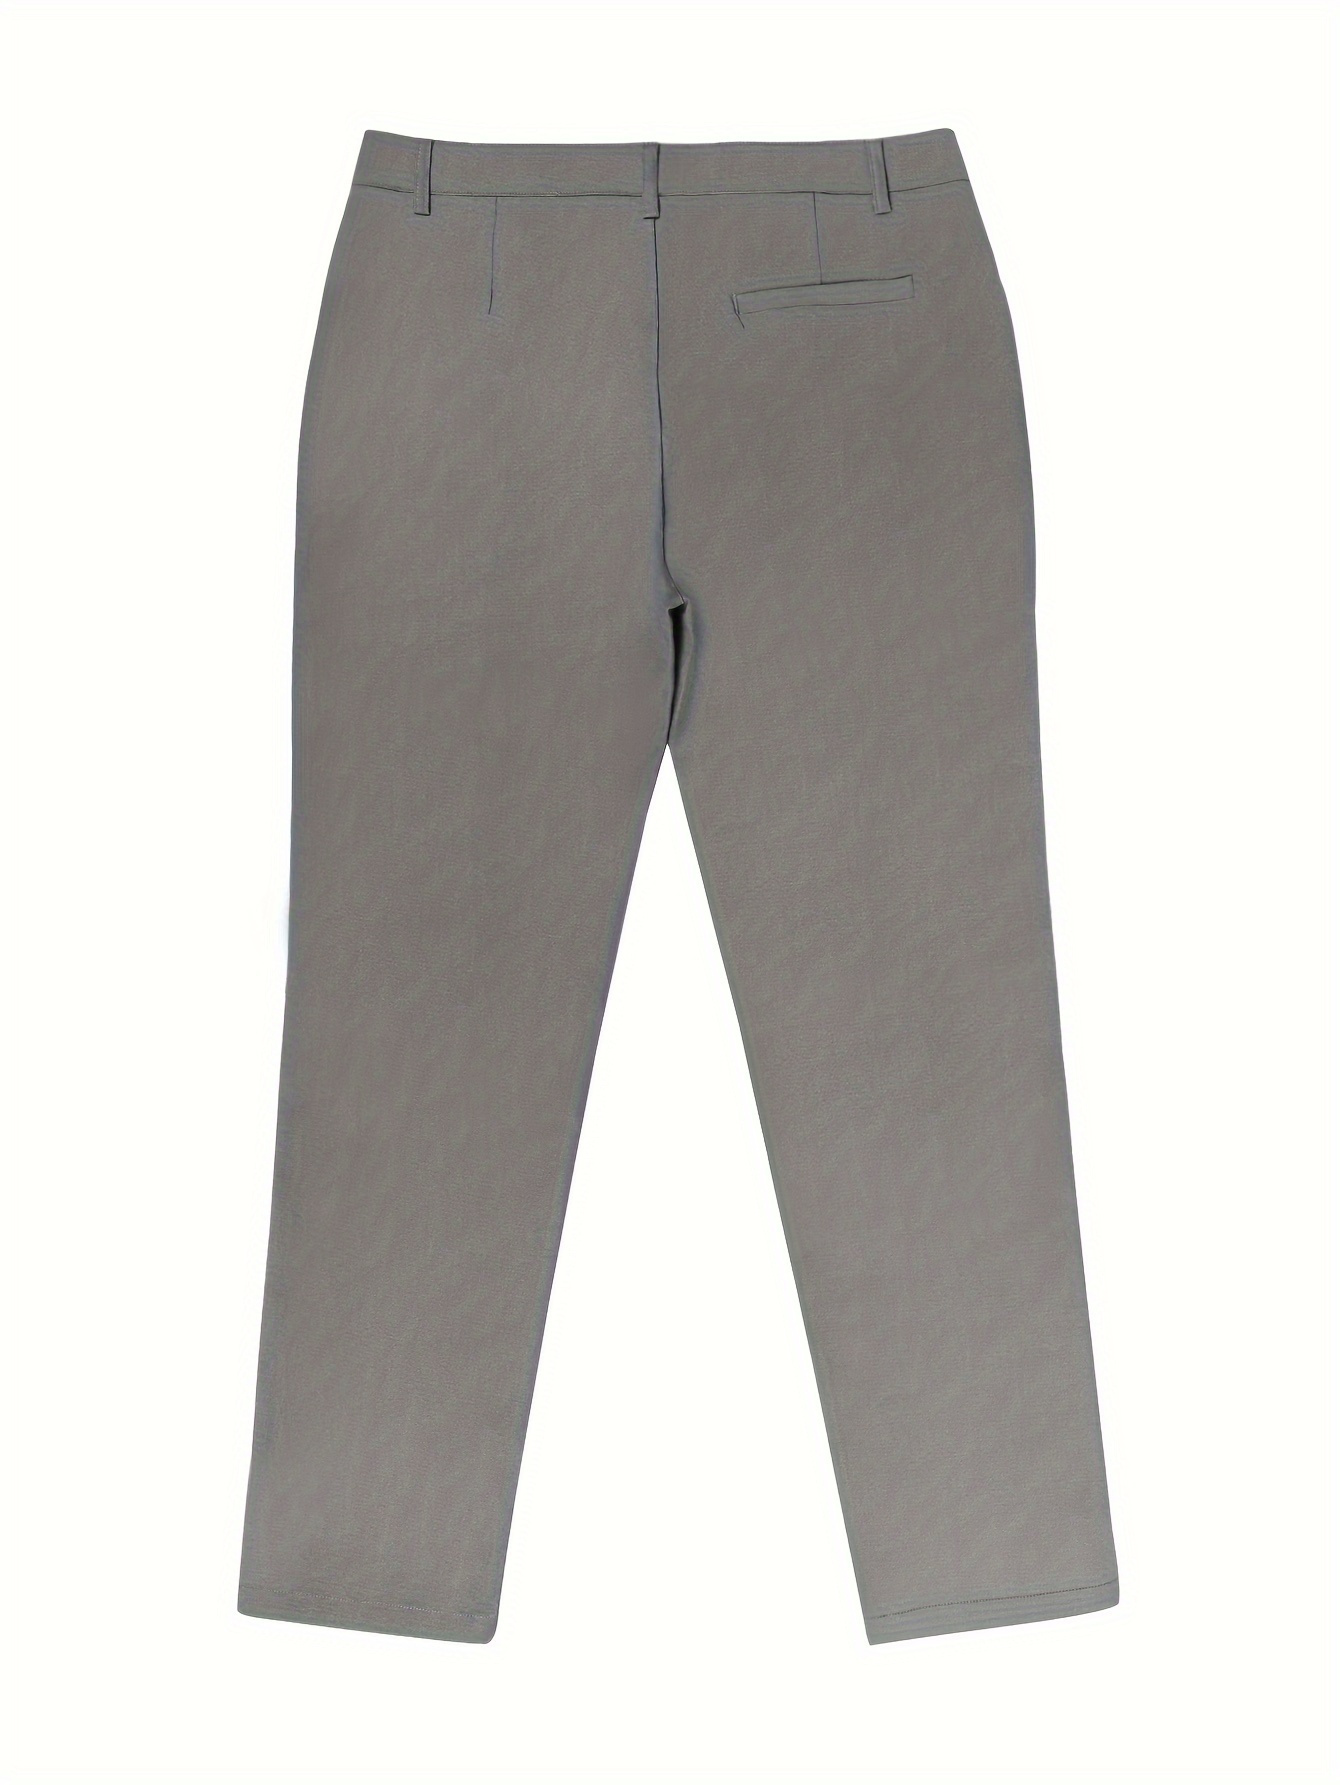 Classic Design Slim Fit Elegant Dress Pants Men's Semi - Temu Greece